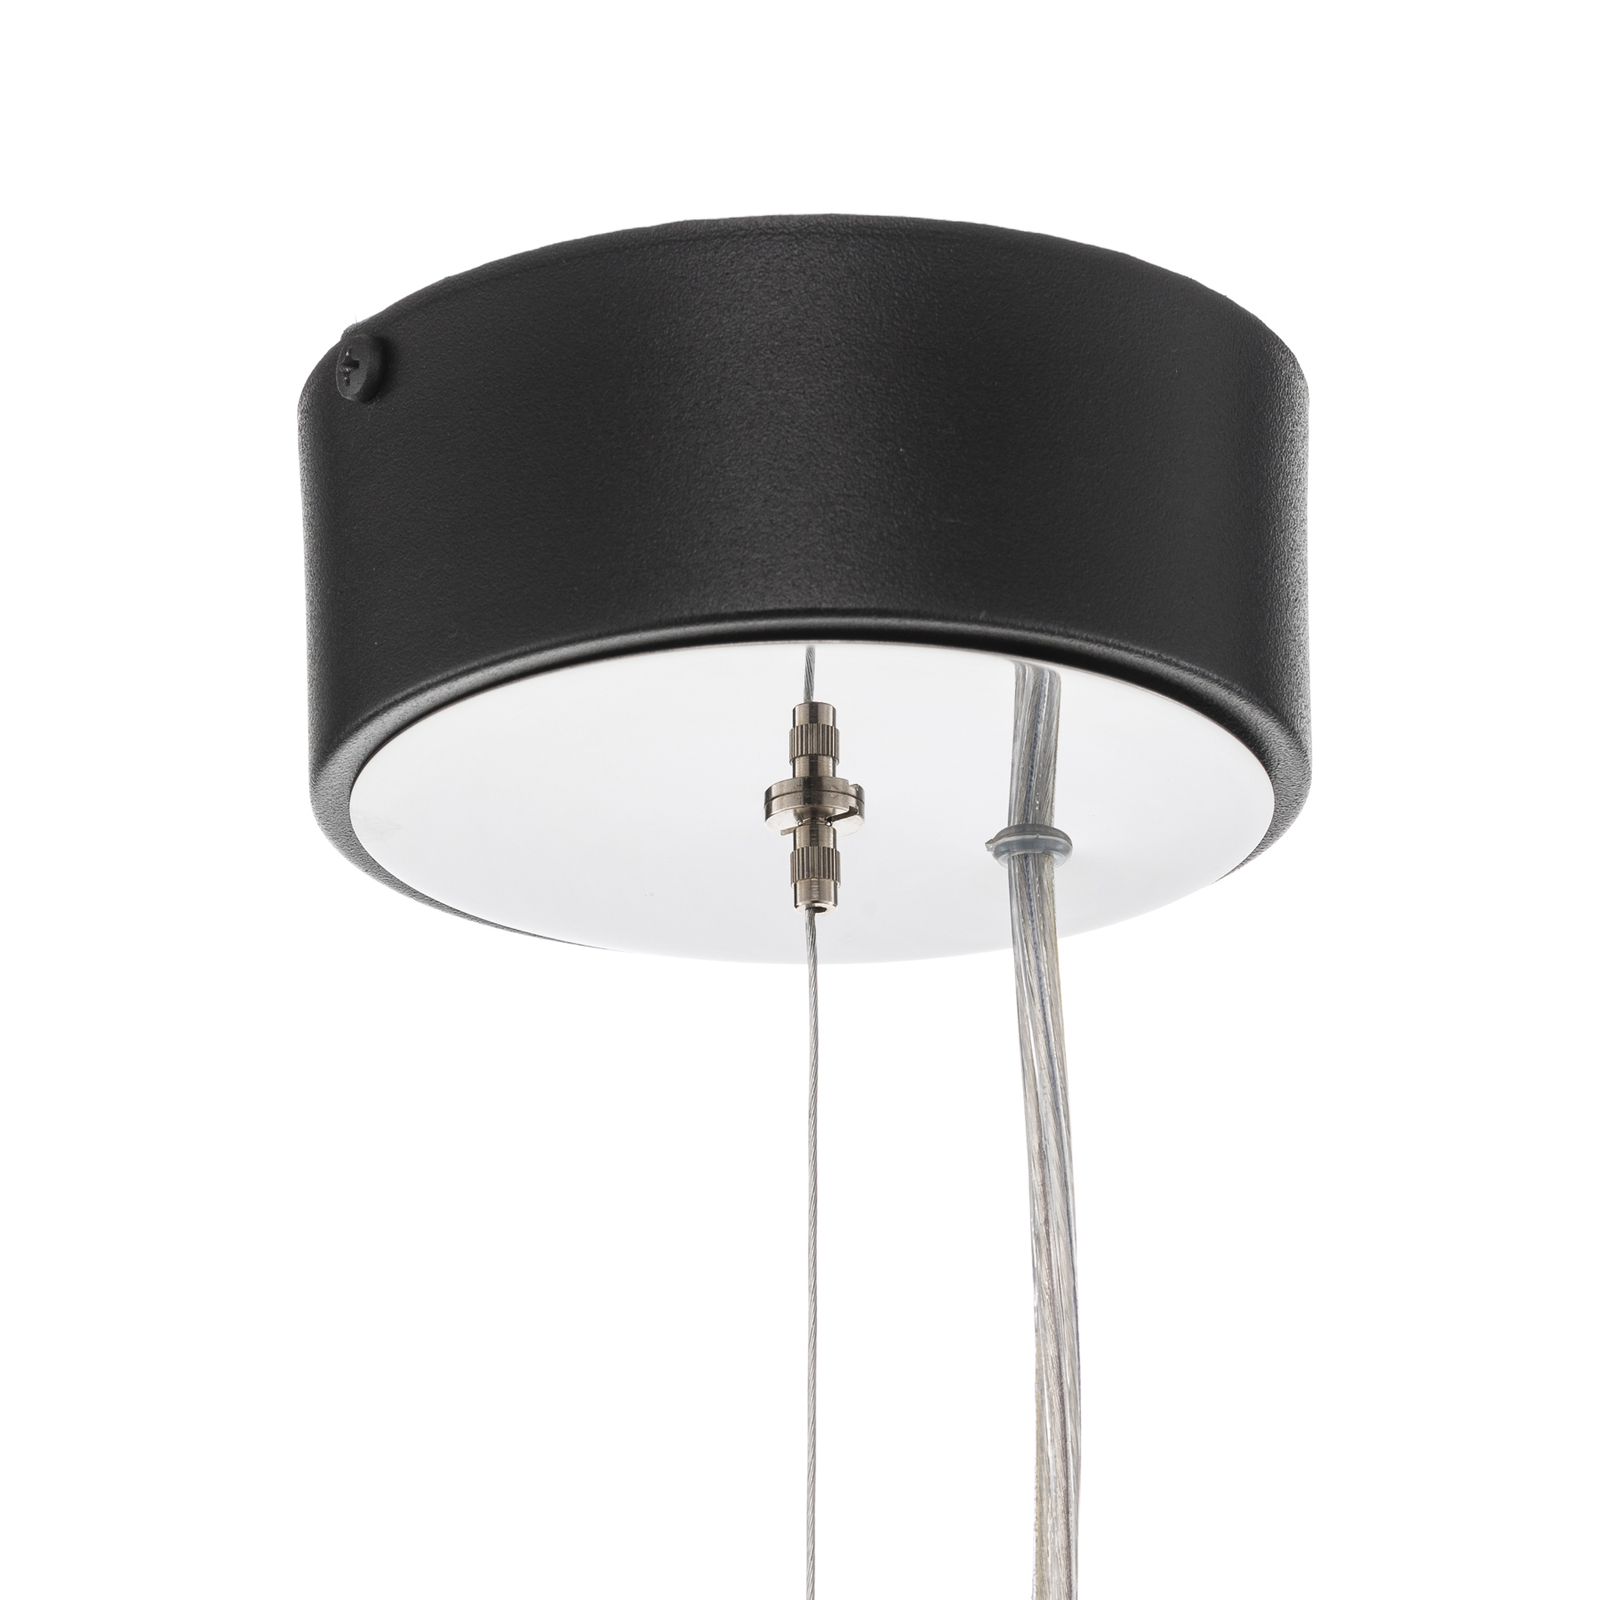 Vento hanglamp, zwart, Ø 50 cm, metaal, E27